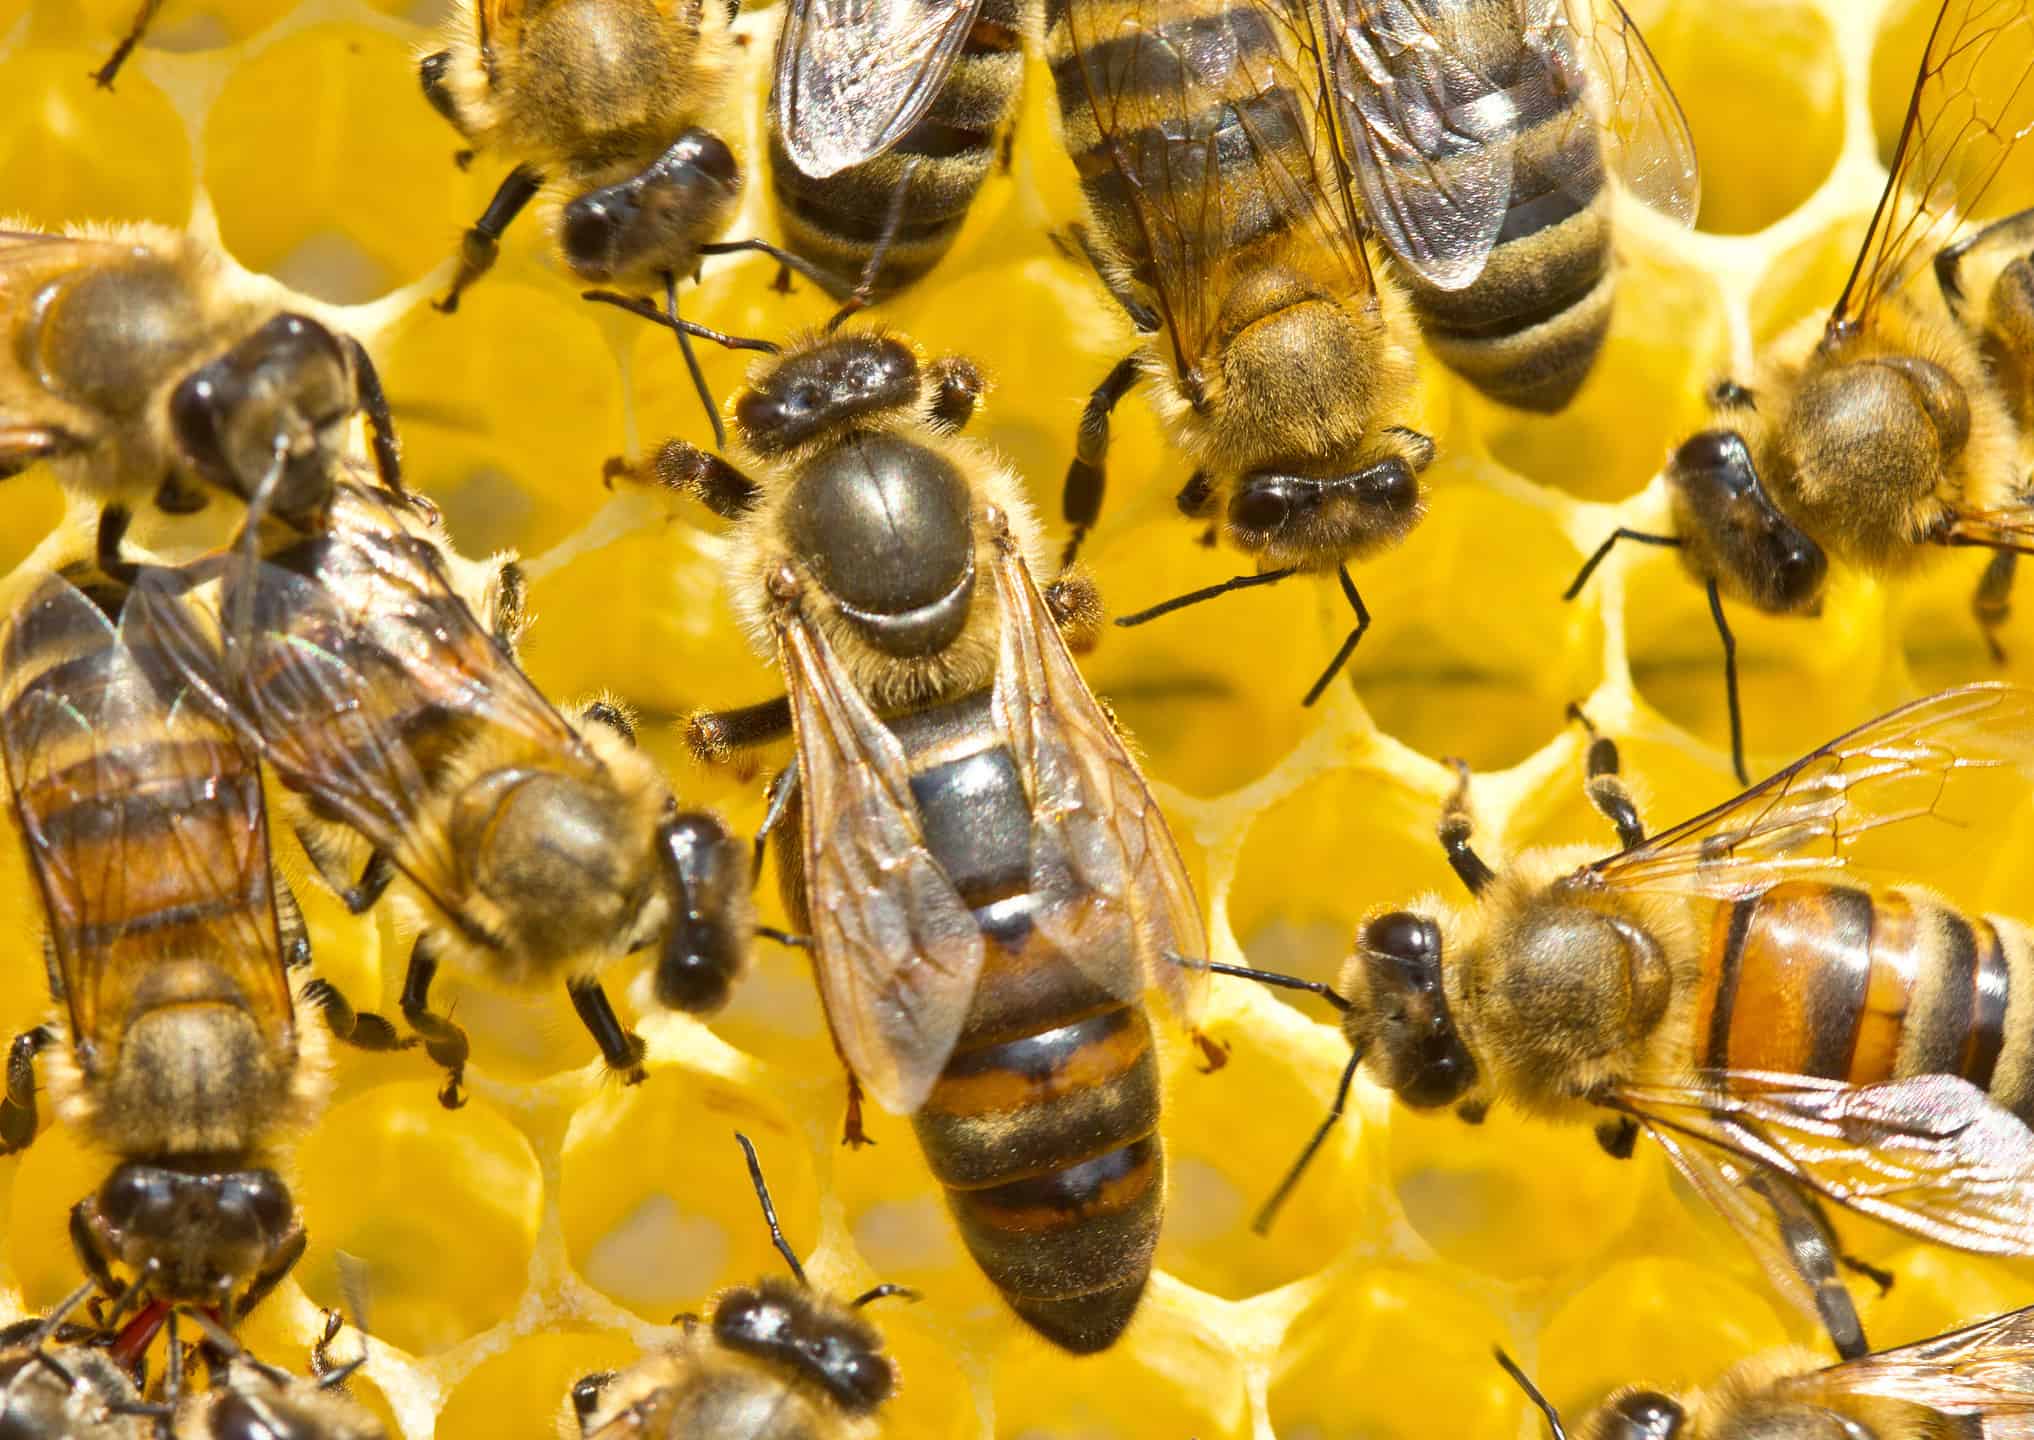 Queen bee laying eggs in honeycomb